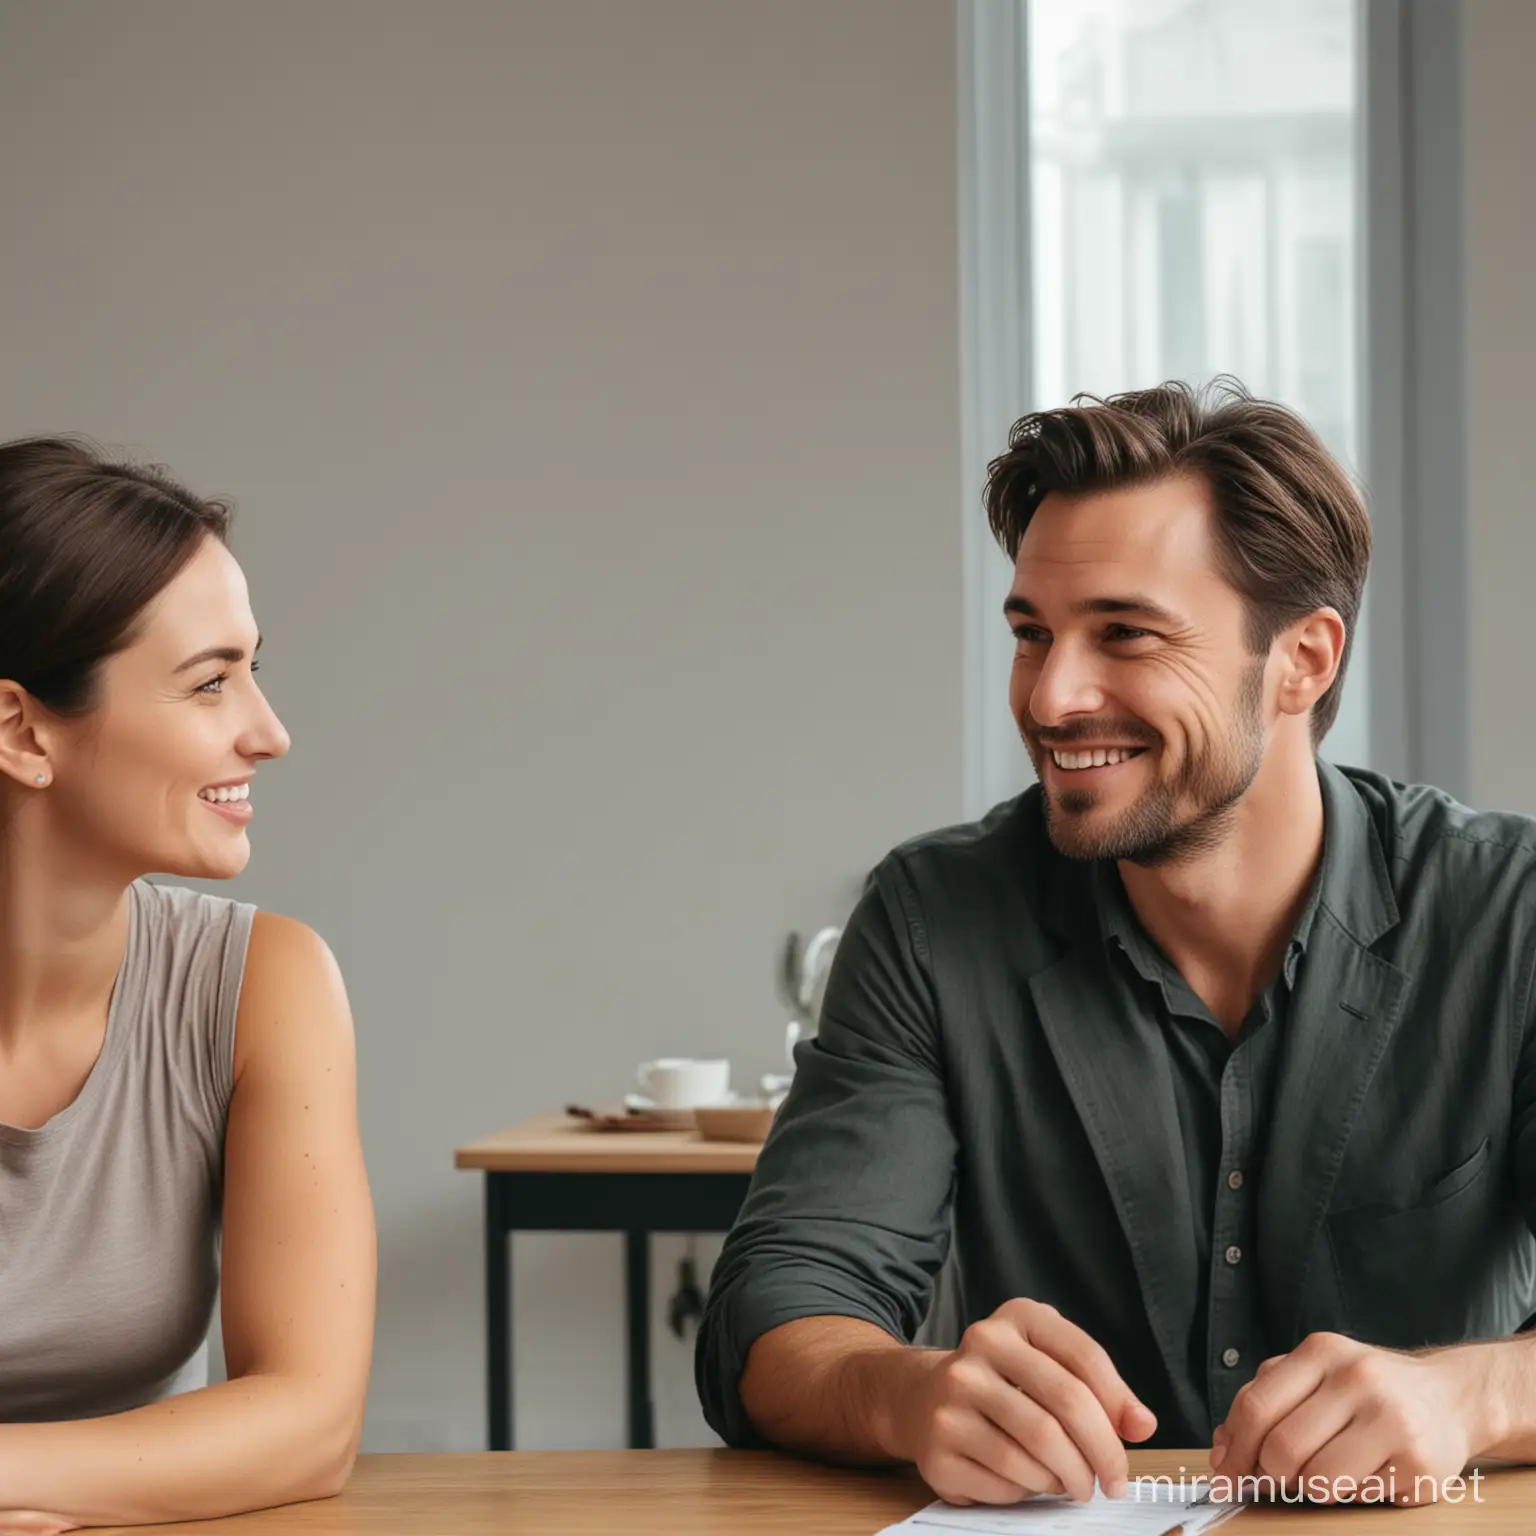 1 homme avec le visage grave ,et une femme, avec le sourire, discutent, autour d'une table